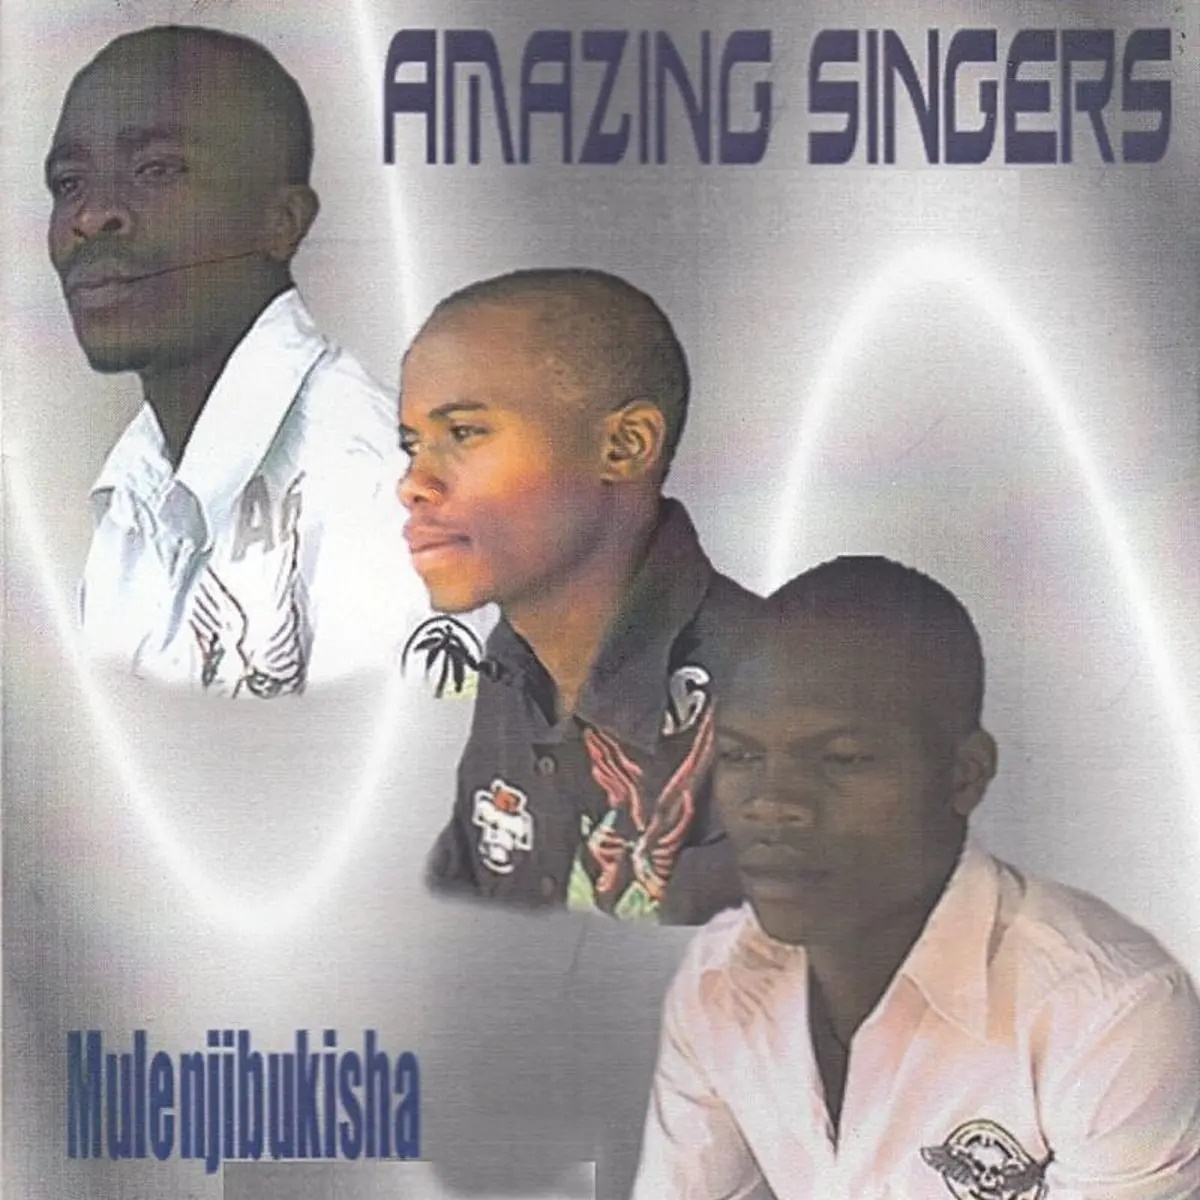 Mulenjibukisha by Amazing Singers | Album